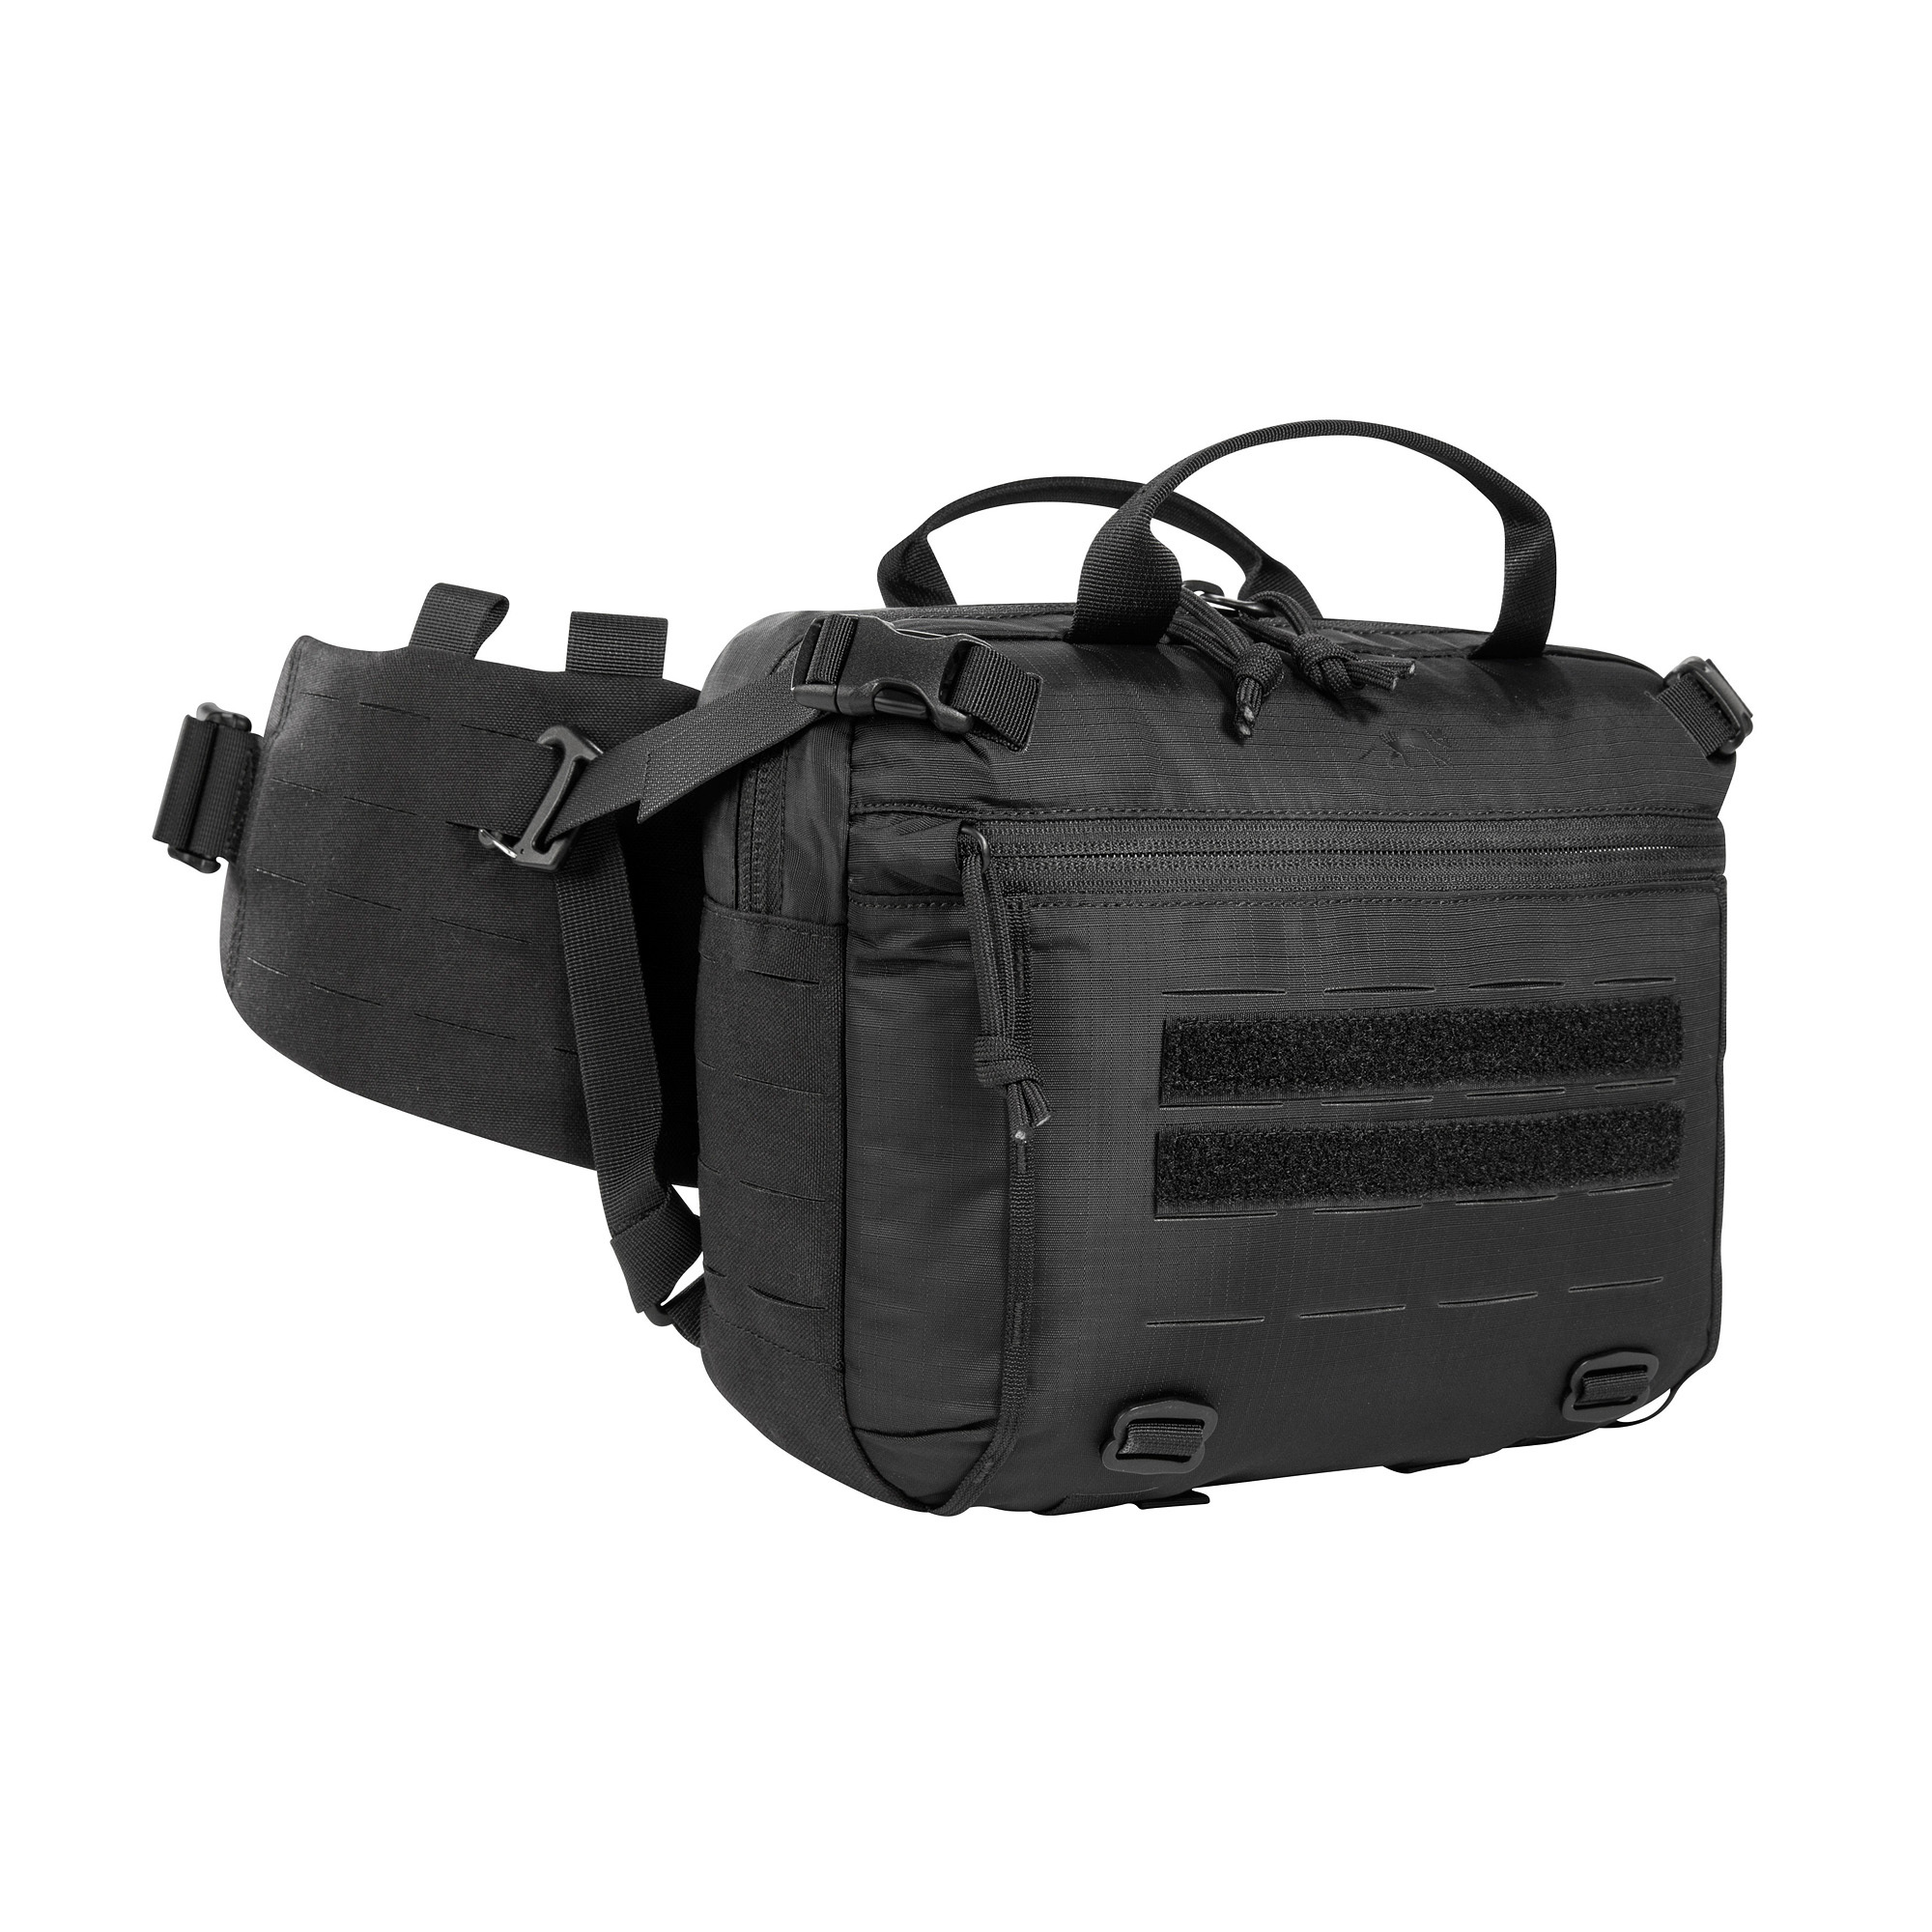 TT Modular Hip Bag 3 - Bum bag